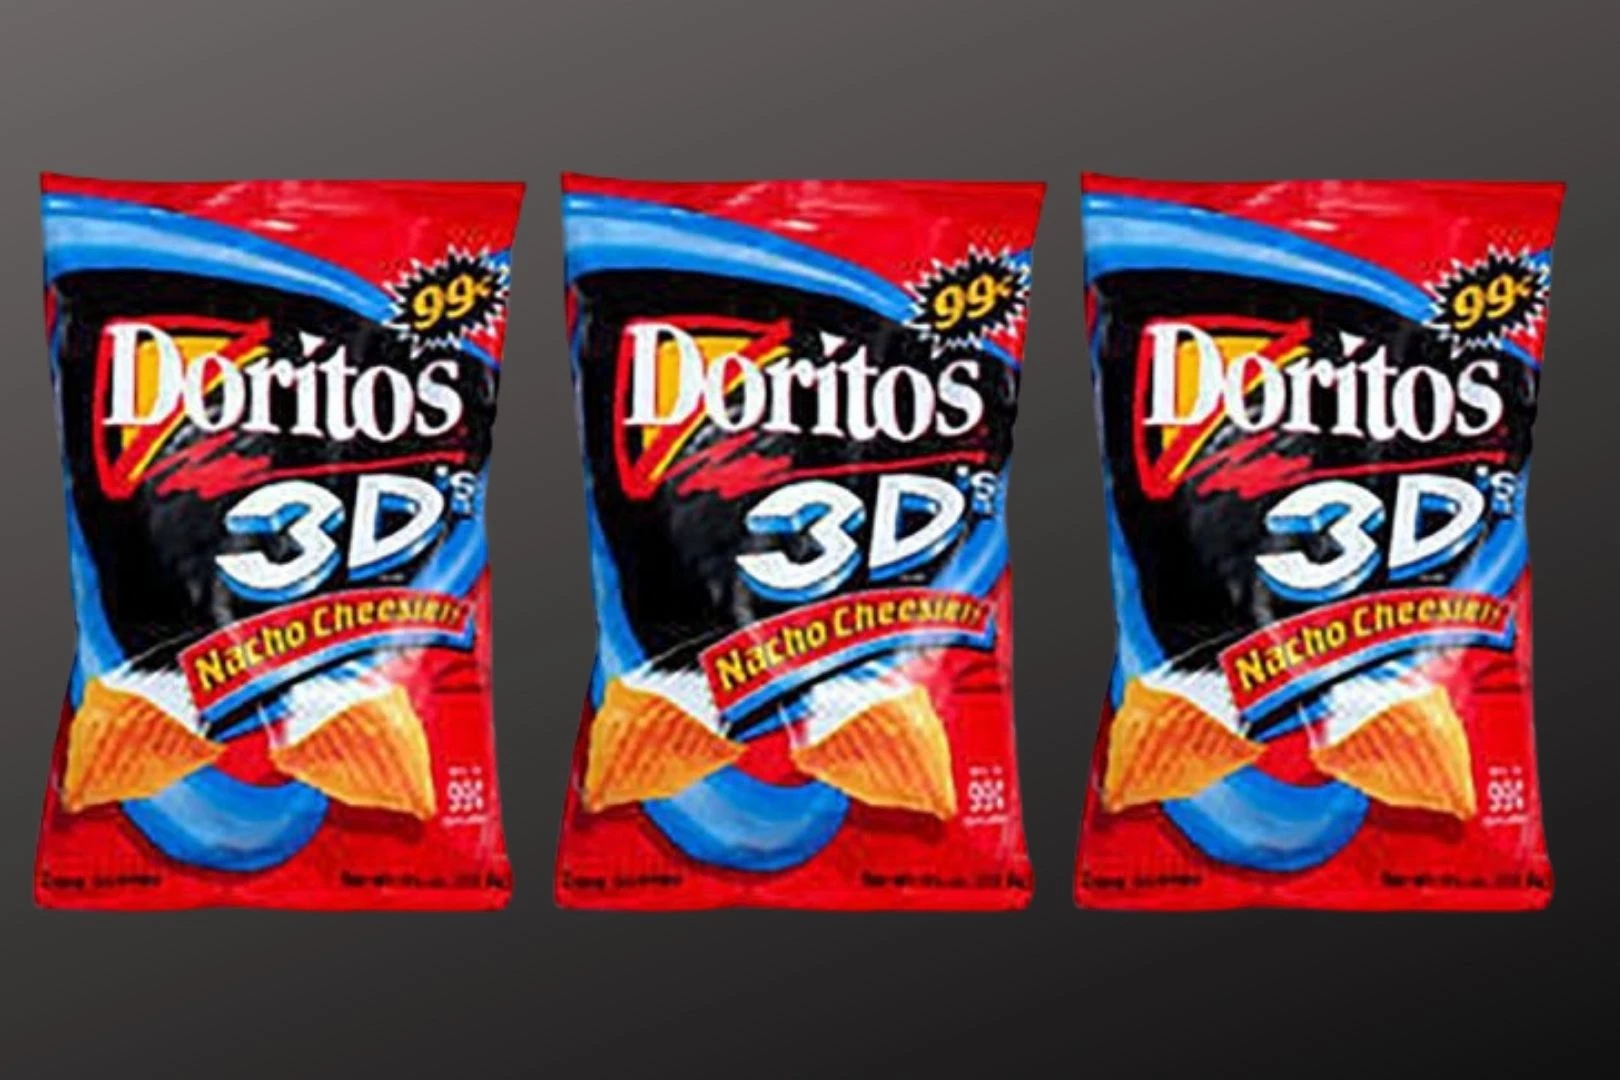 3d Doritos Are Making A Comeback